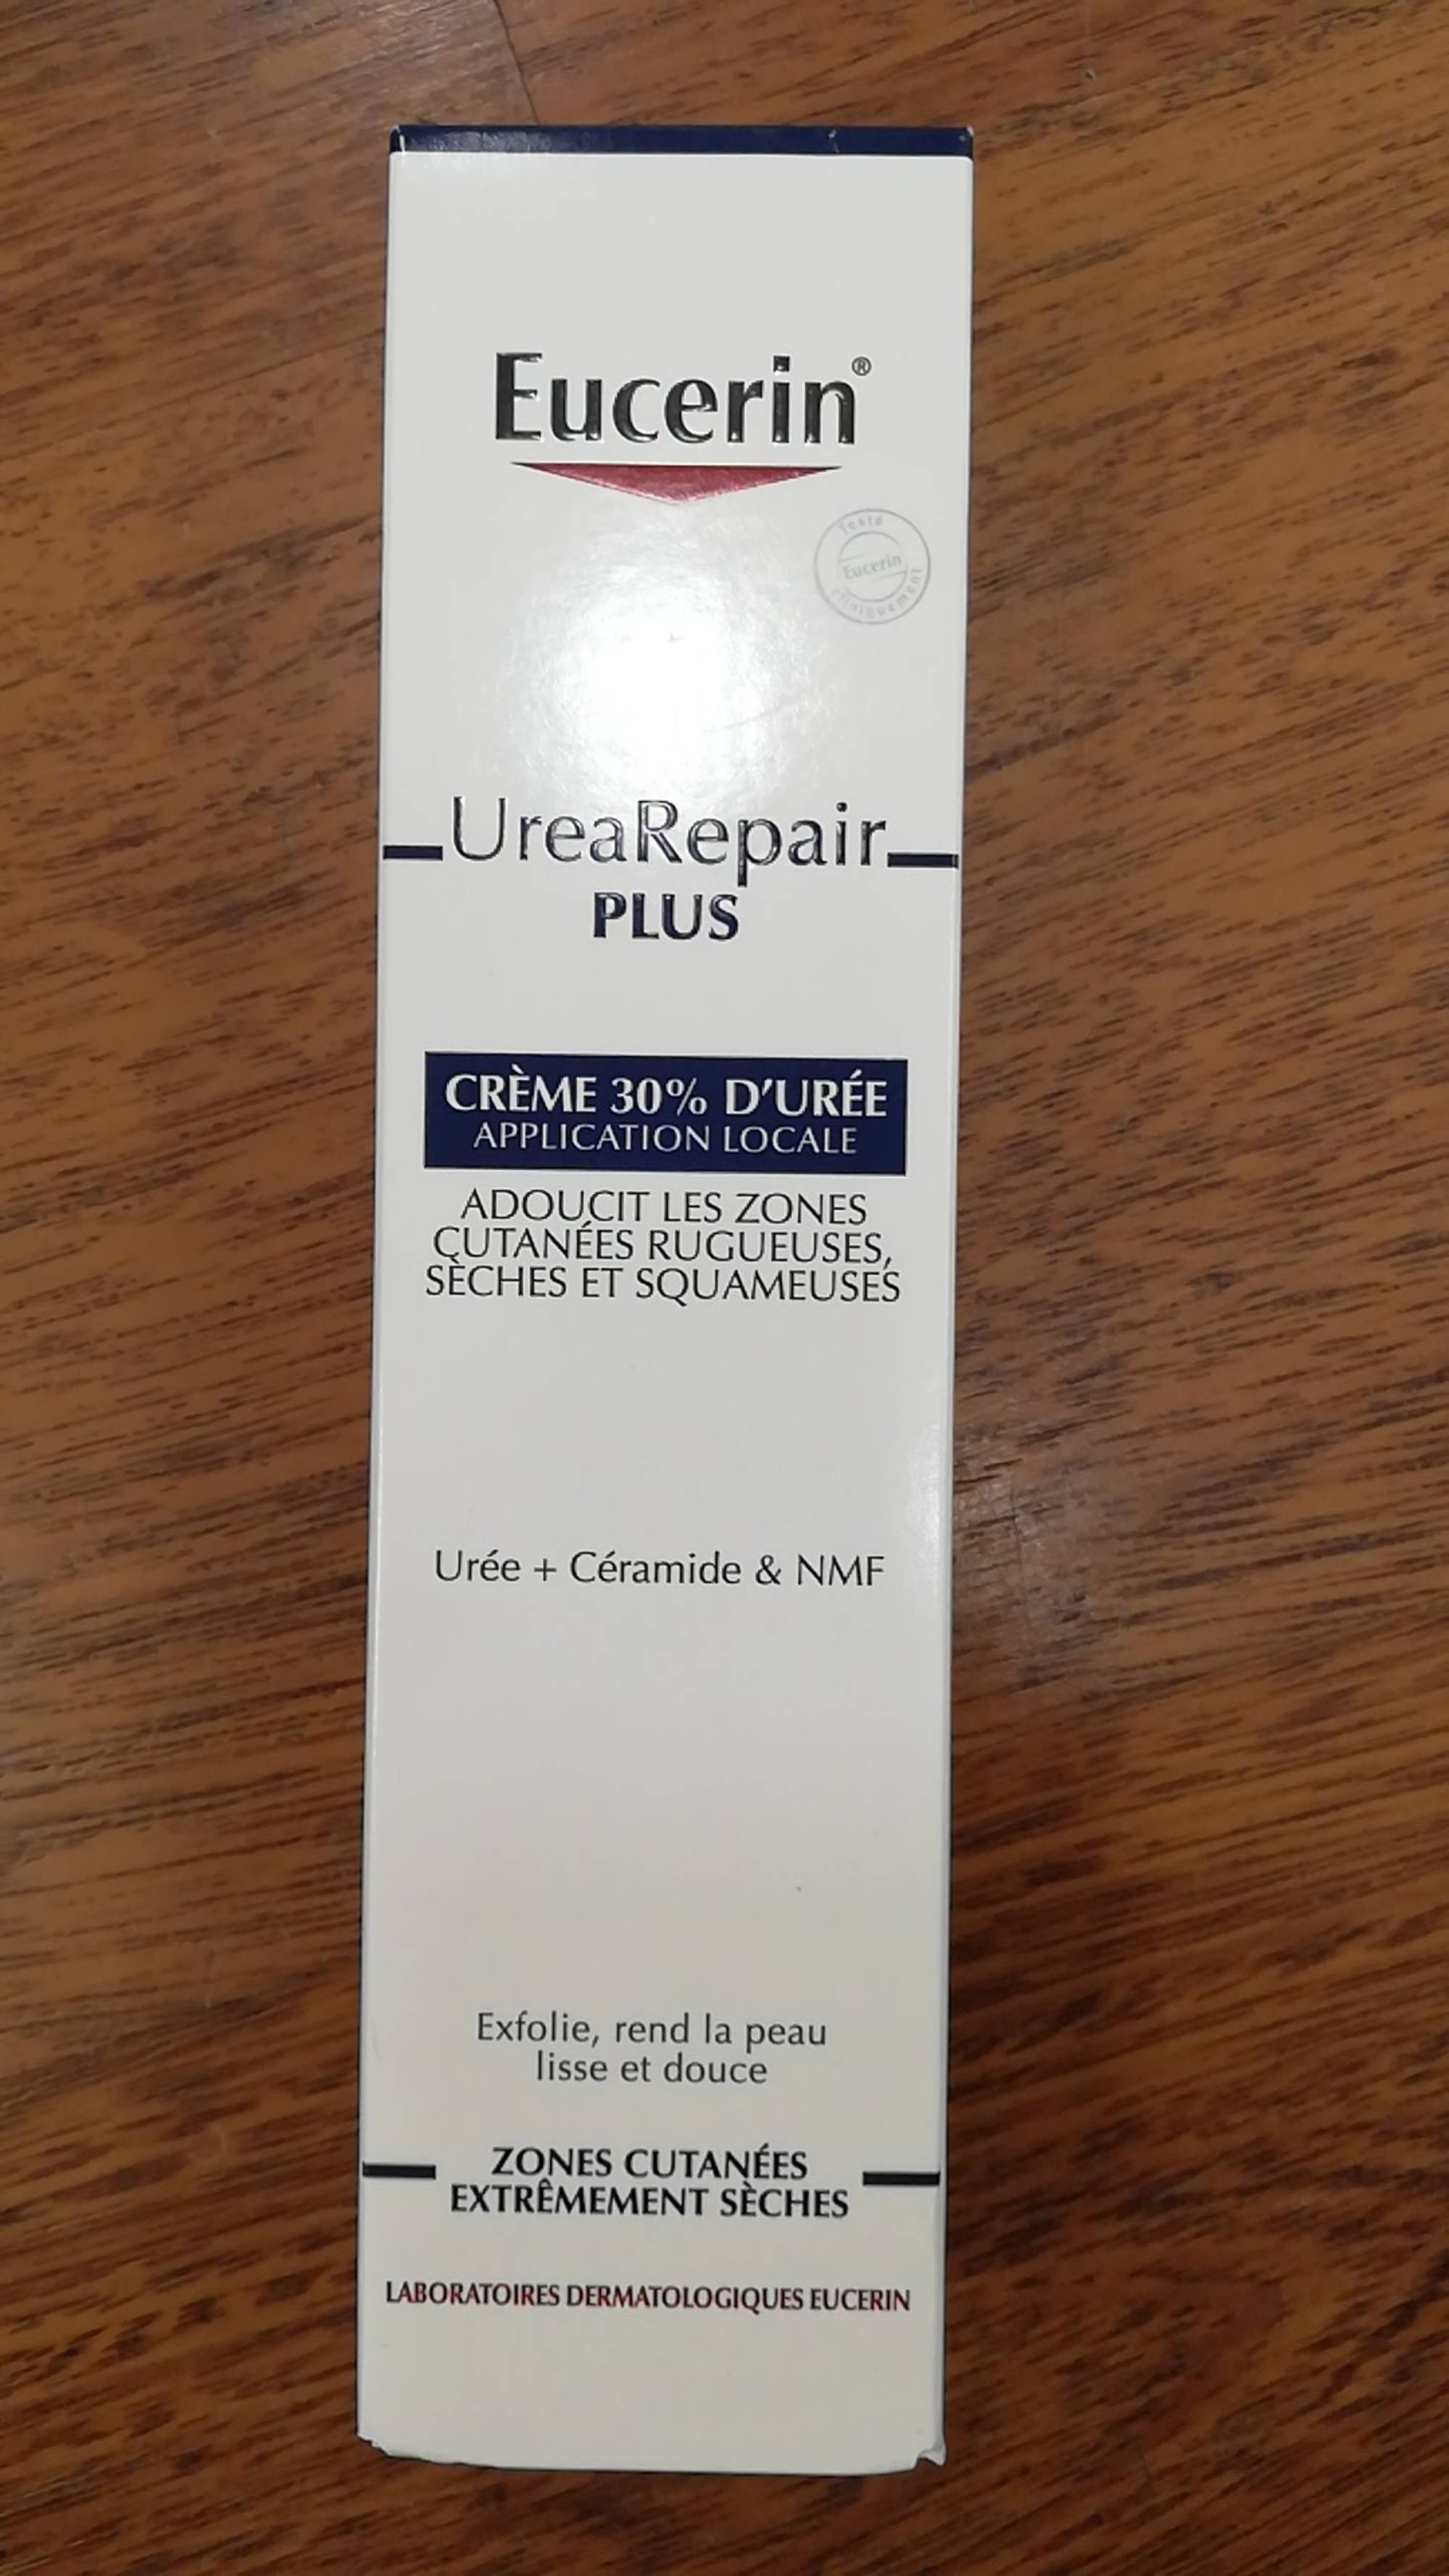 EUCERIN - Urea repair plus - Crème 30% d'urée 